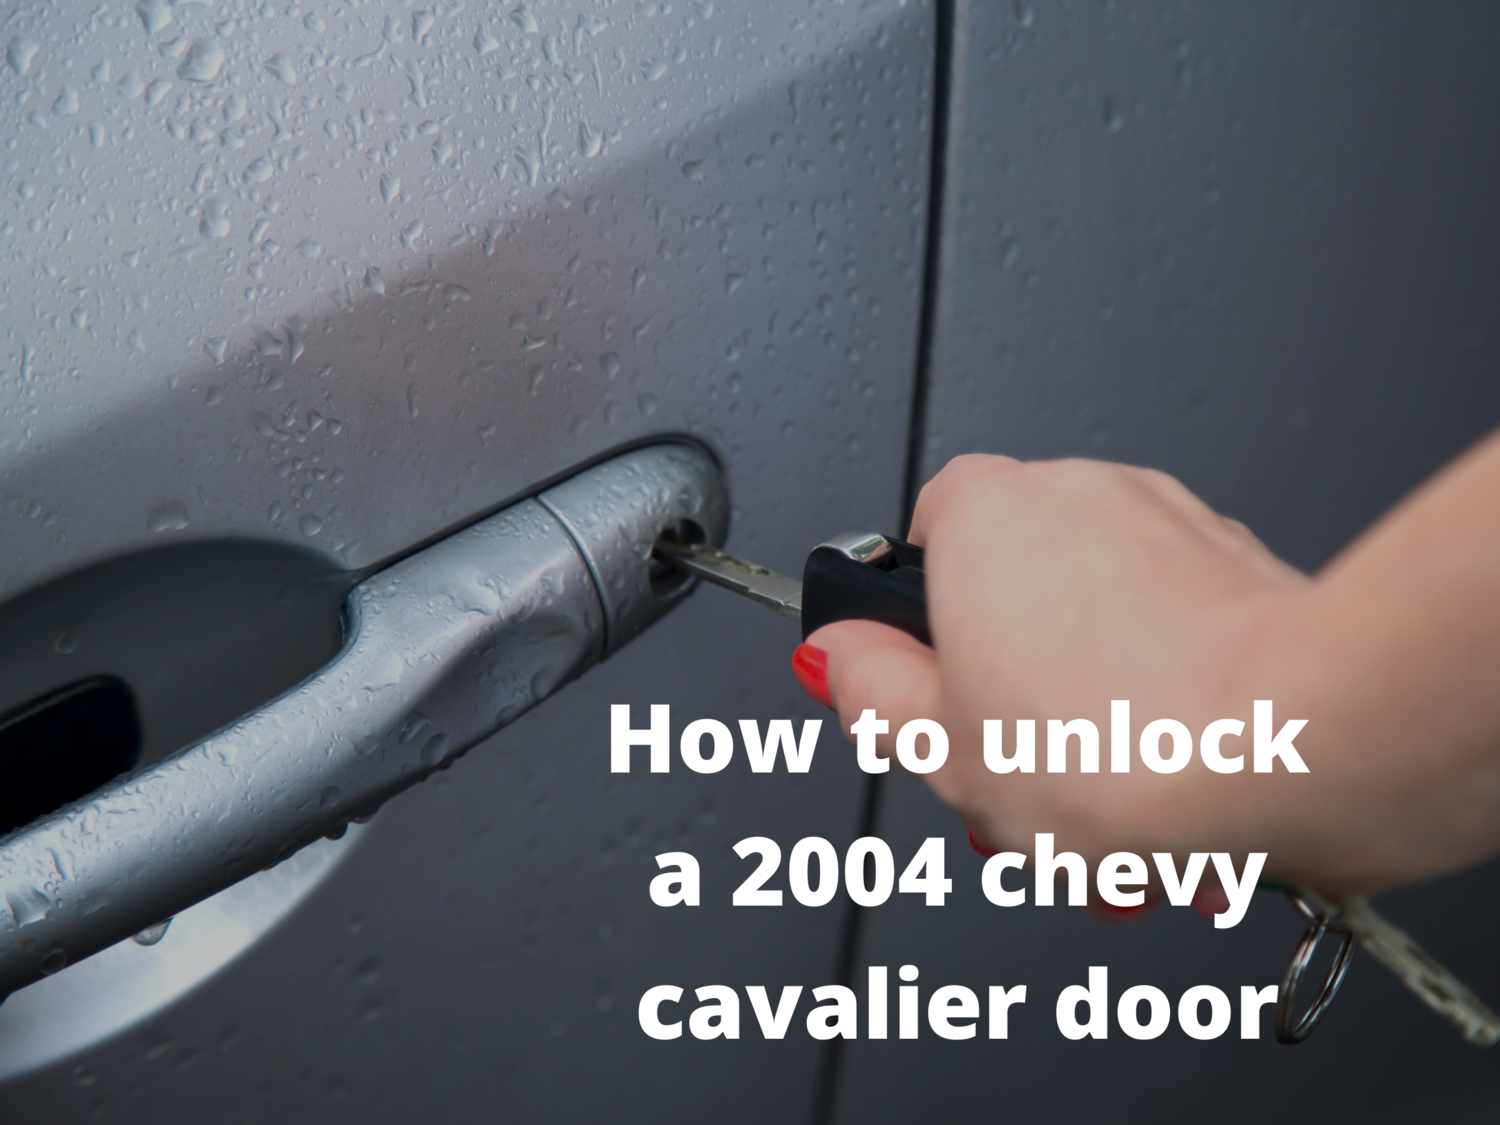 How to unlock a 2004 chevy cavalier door